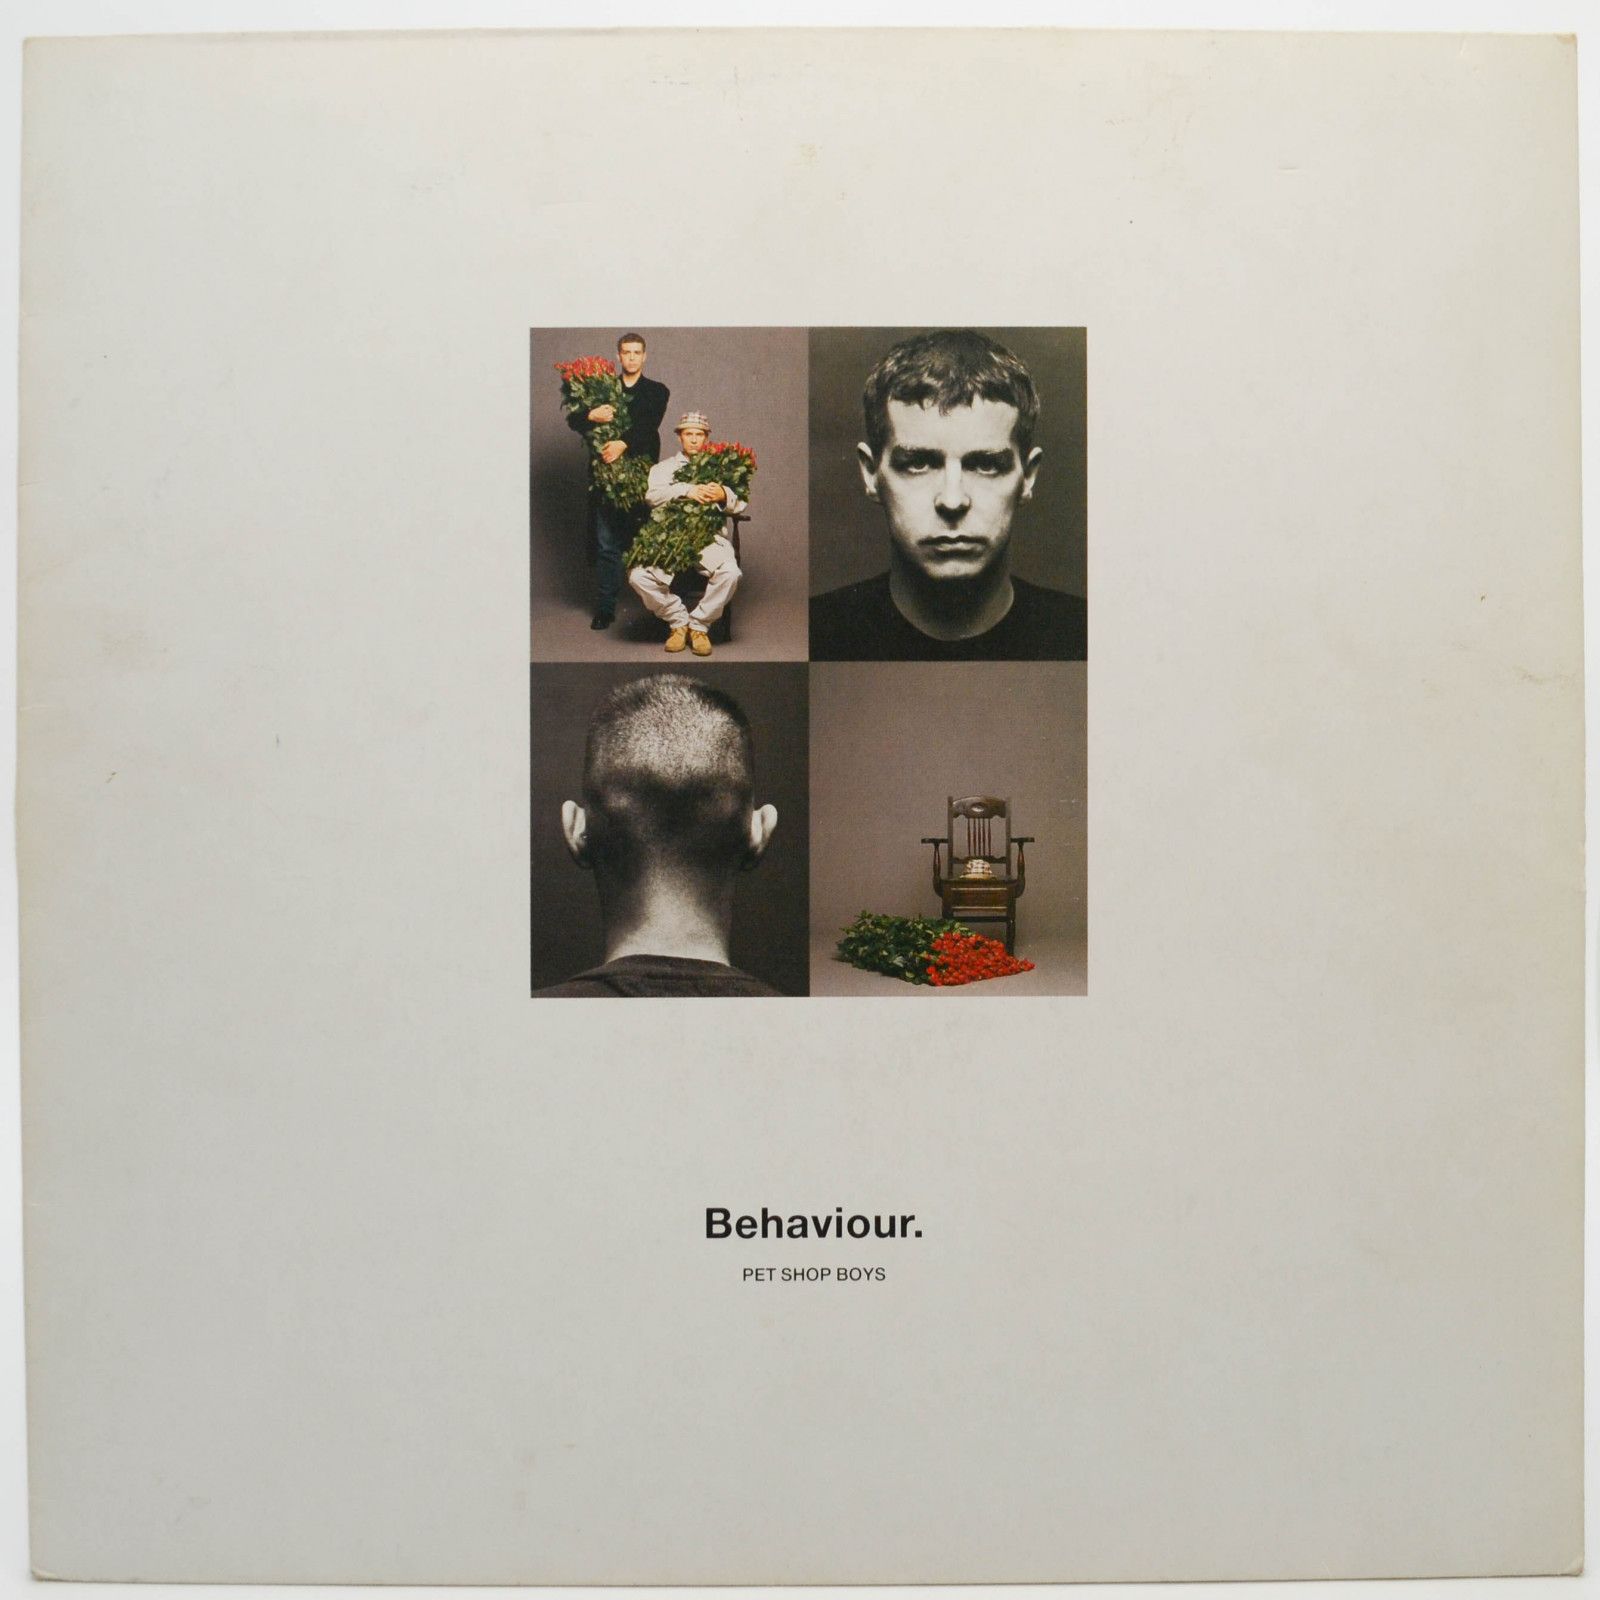 Pet Shop Boys — Behaviour, 1990